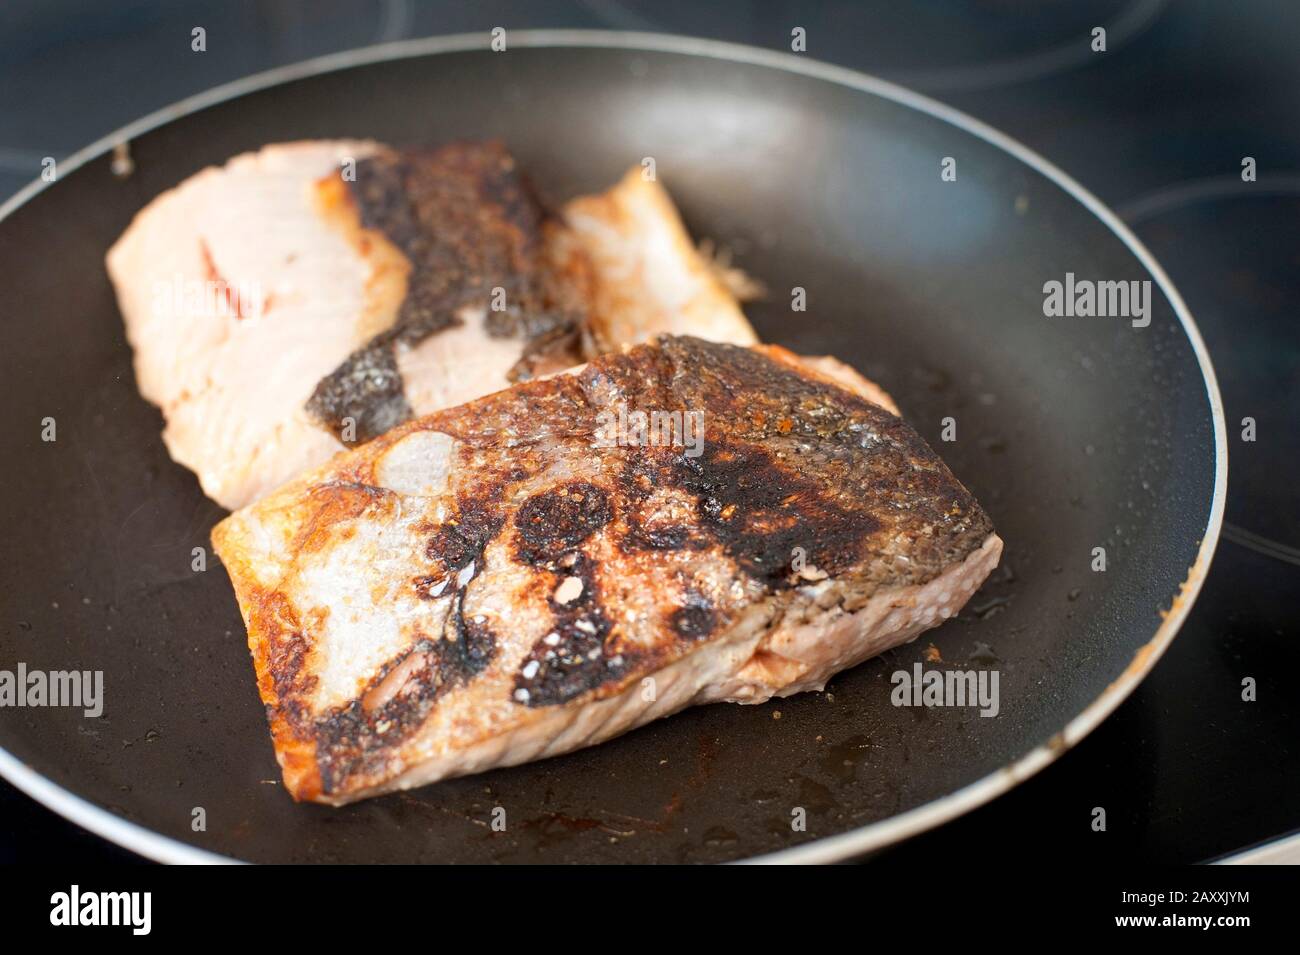 Fischfilet aus dem Lachs steaks in einer Pfanne über dem Herd, während Sie ein köstliches, gesundes Meeresfrüchte-Abendessen genießen Stockfoto